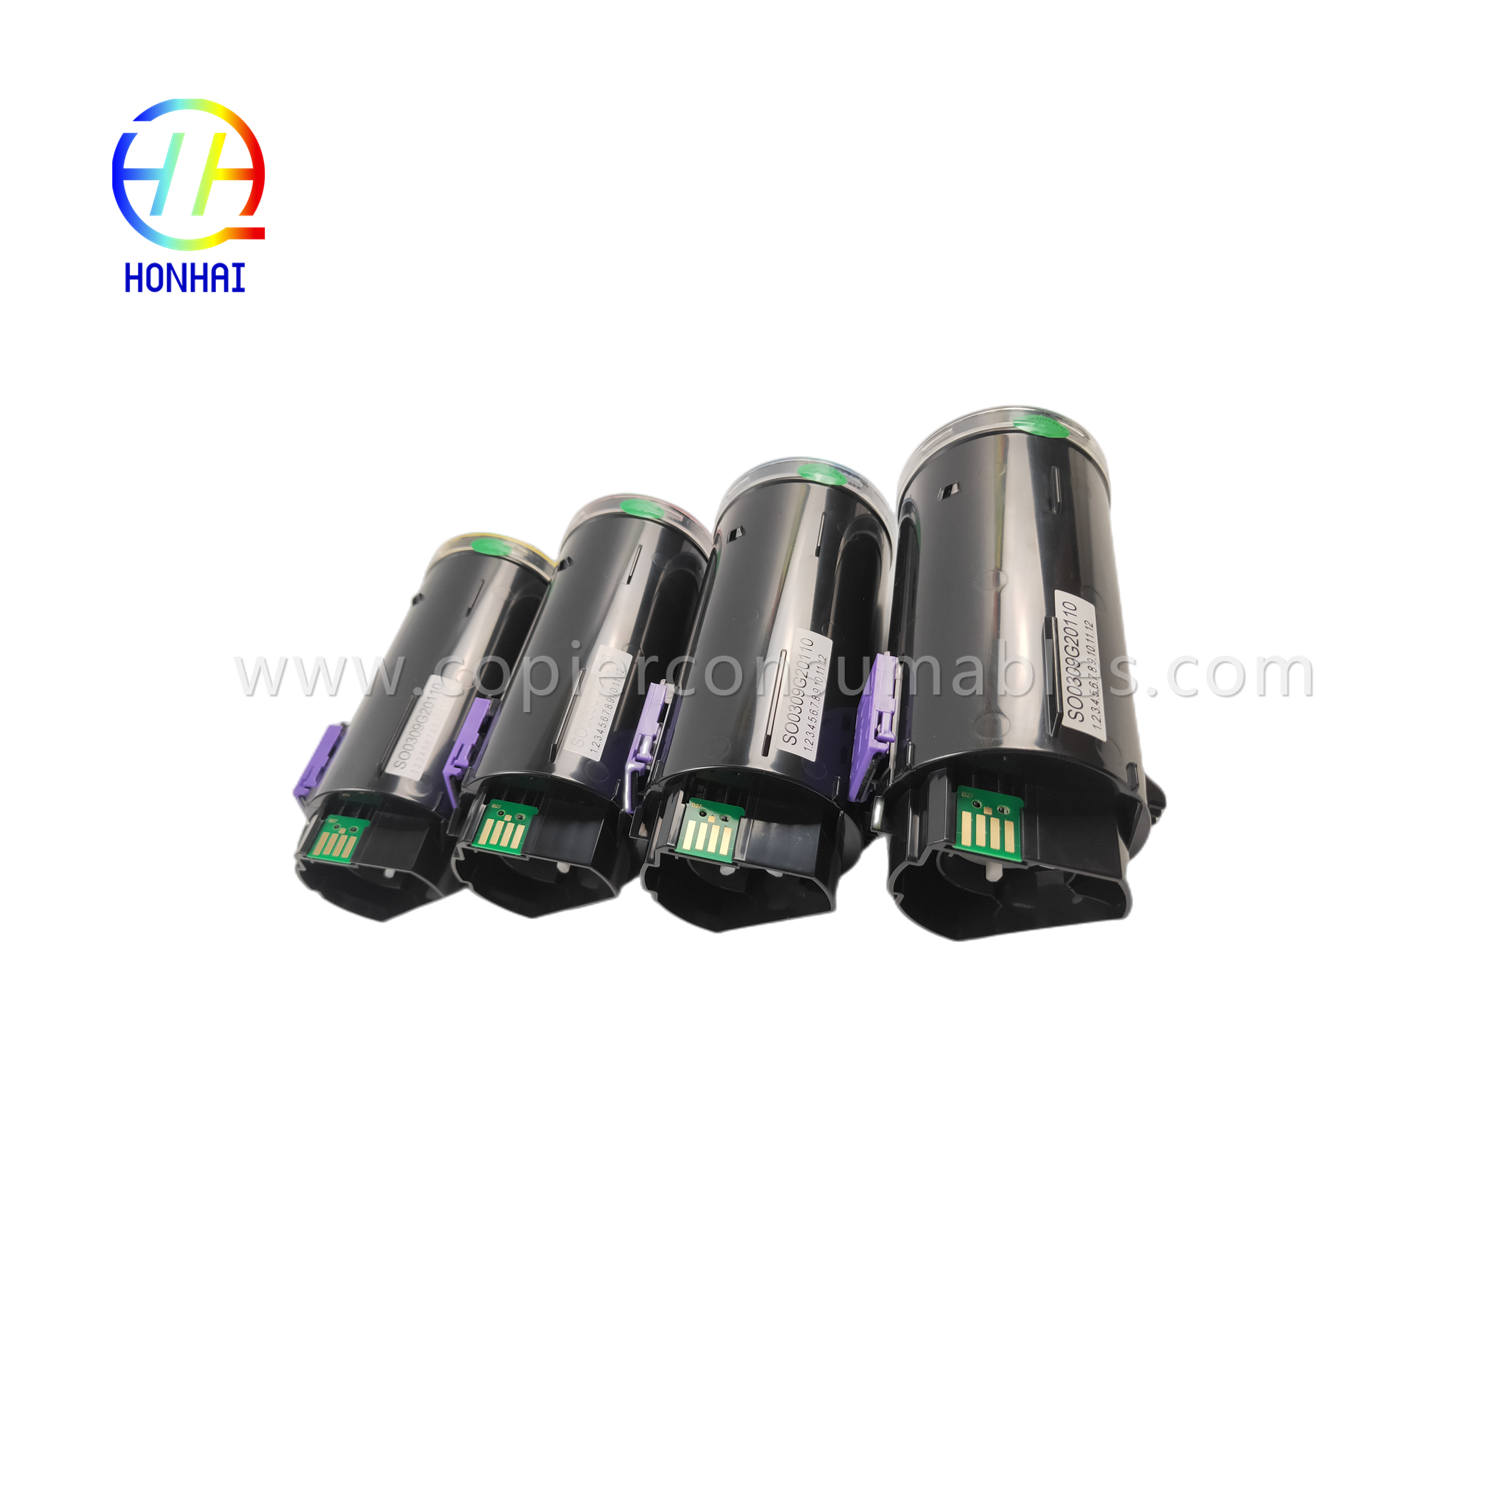 https://www.copierconsumables.com/toner-cartridge-set-imported-powder-for-ricoh-imc530-imc530f-imc530fb-ref-418240-ref-418241-ref-418242-ref-41824